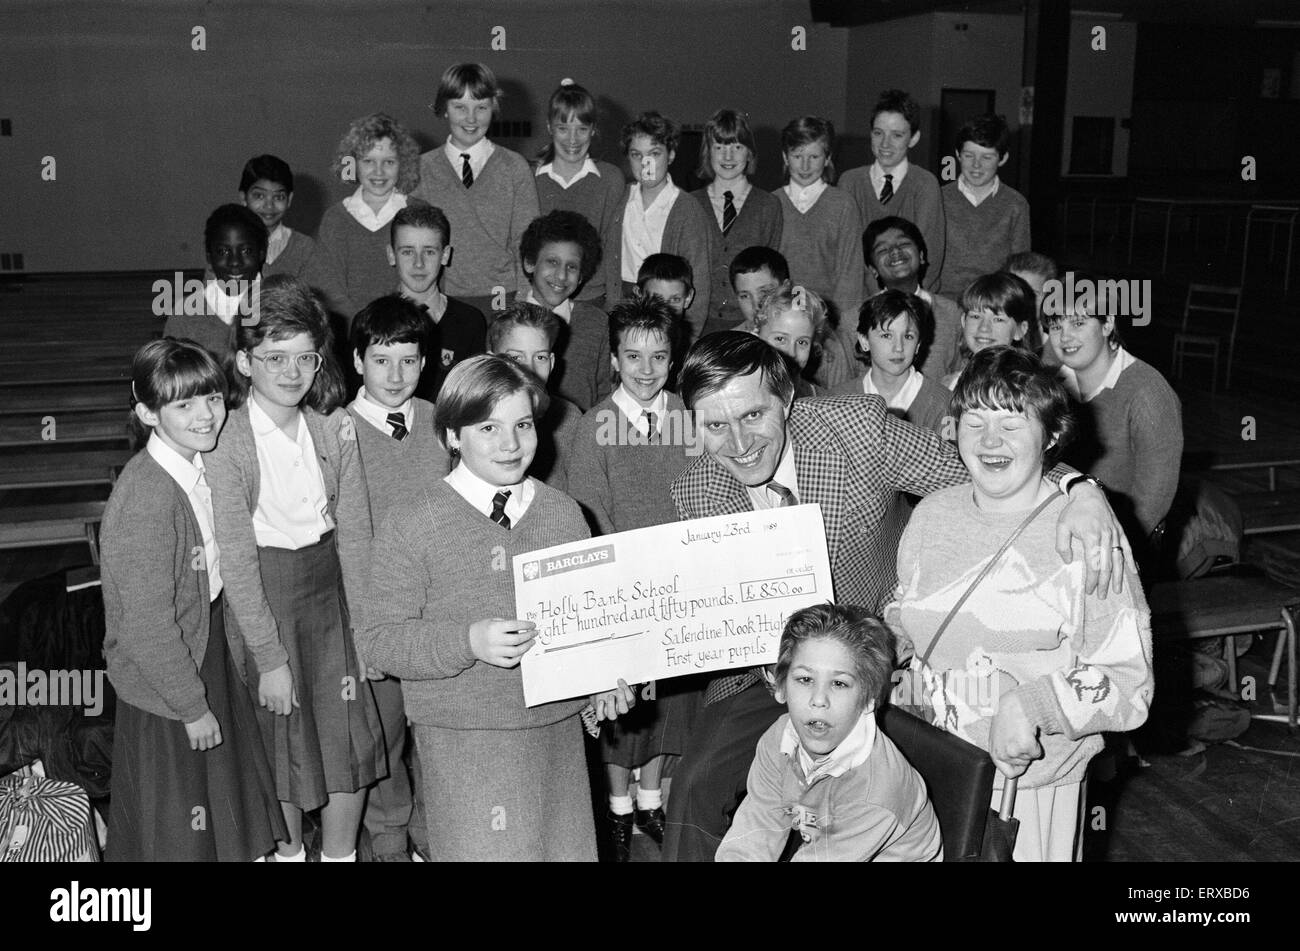 Schüler von Salendine Nook High School präsentieren einen Scheck im Wert von 850 Poounds John Proctor, kommissarischer Leiter der Holly Bank Schule, für ihre neuen Räume in Mirfield, 26. Januar 1989. Stockfoto